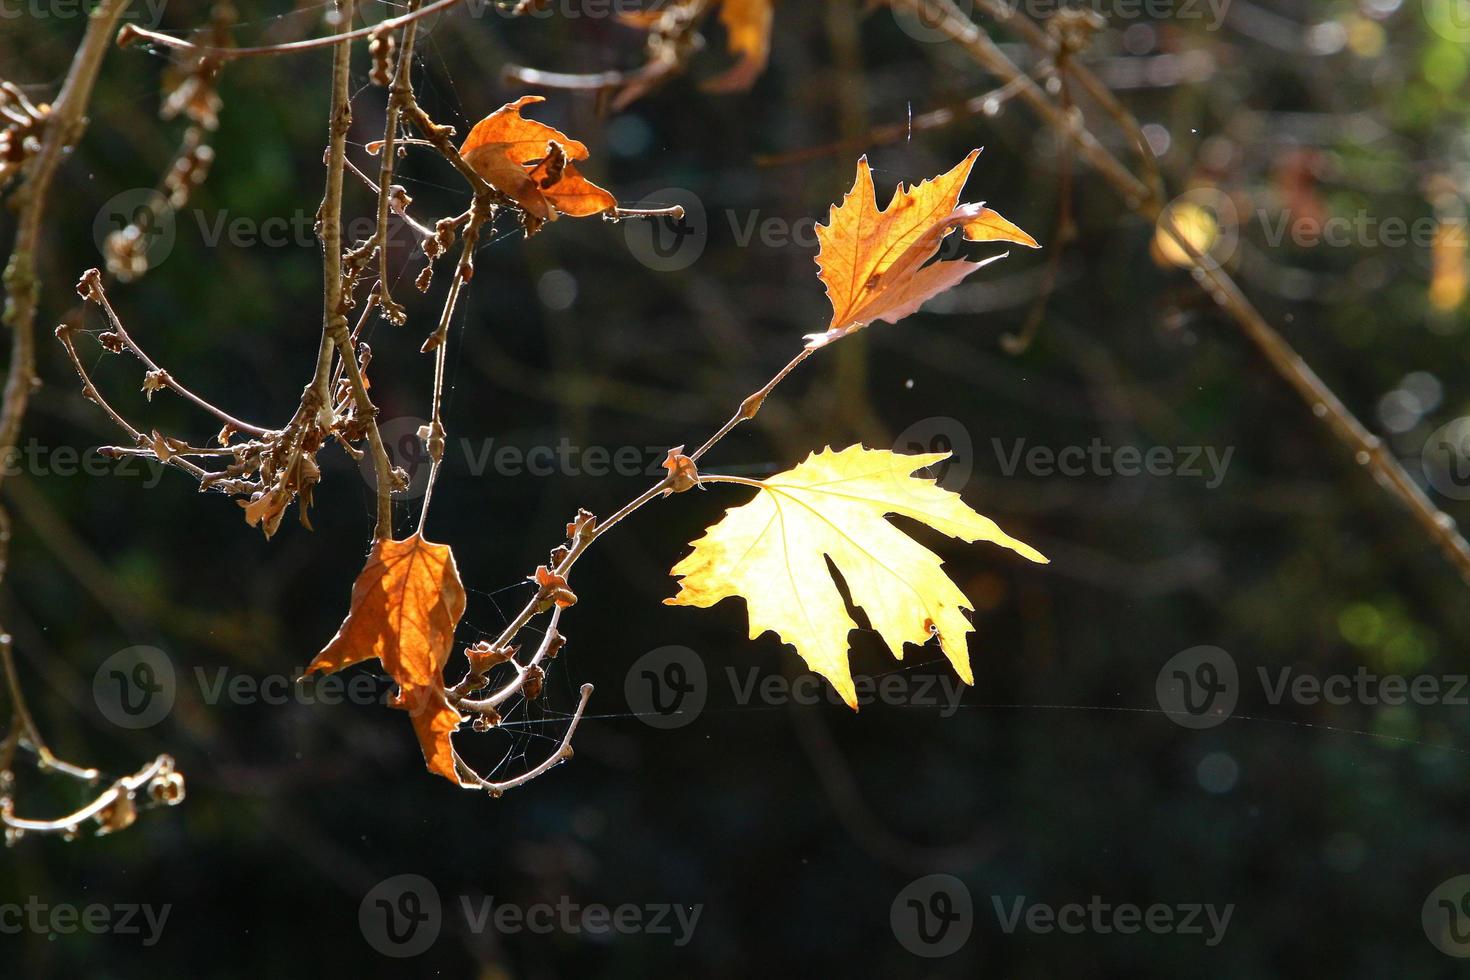 en las ramas y hojas de los árboles telas de araña de hilos delgados. foto